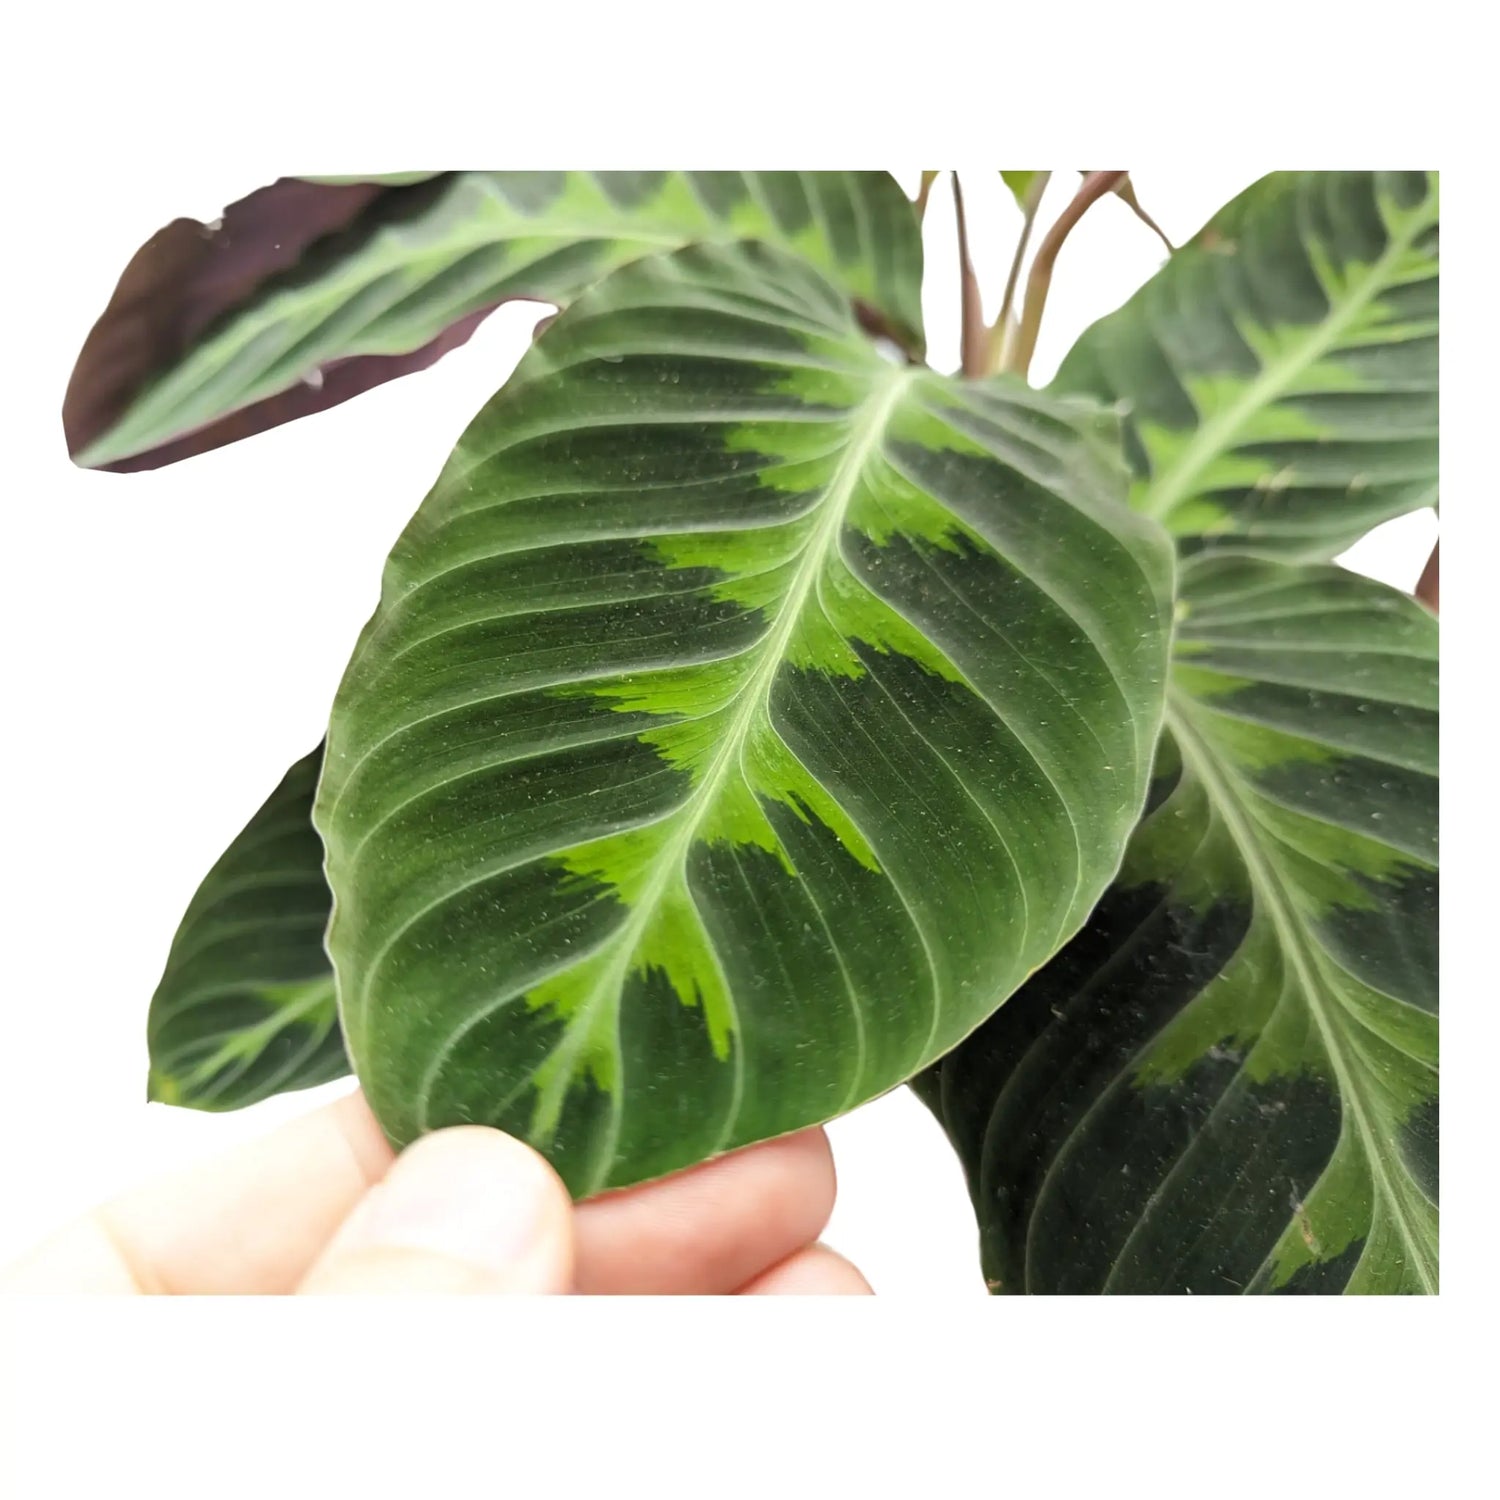 Calathea Warscewiczii - Jungle Velvet Leaf Culture